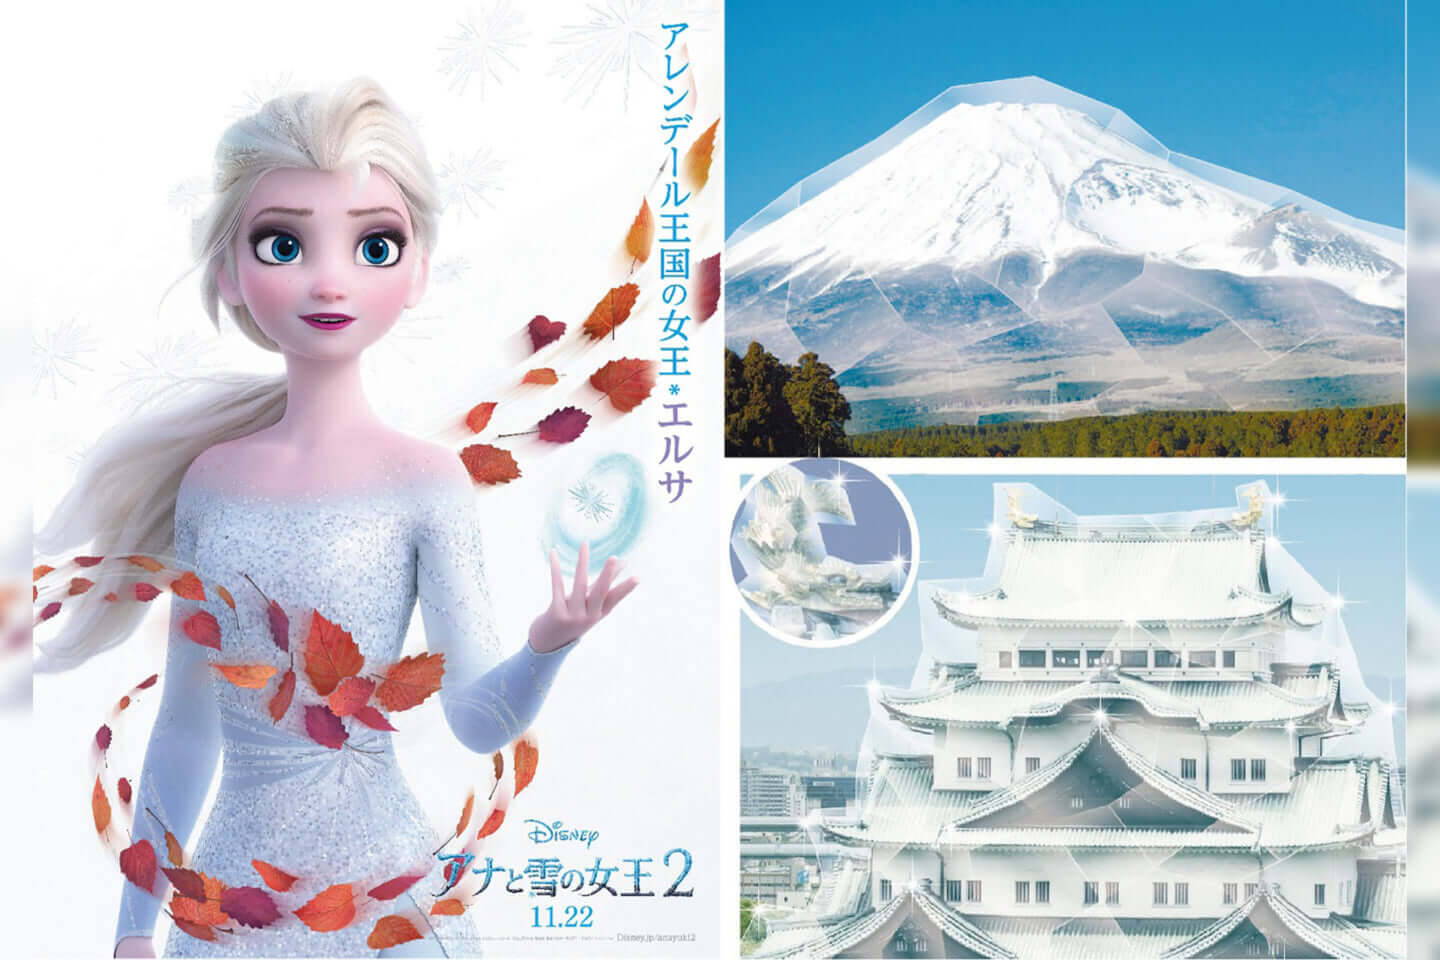 エルサの魔法で日本中が凍る アナと雪の女王2 公開直前 エルサ